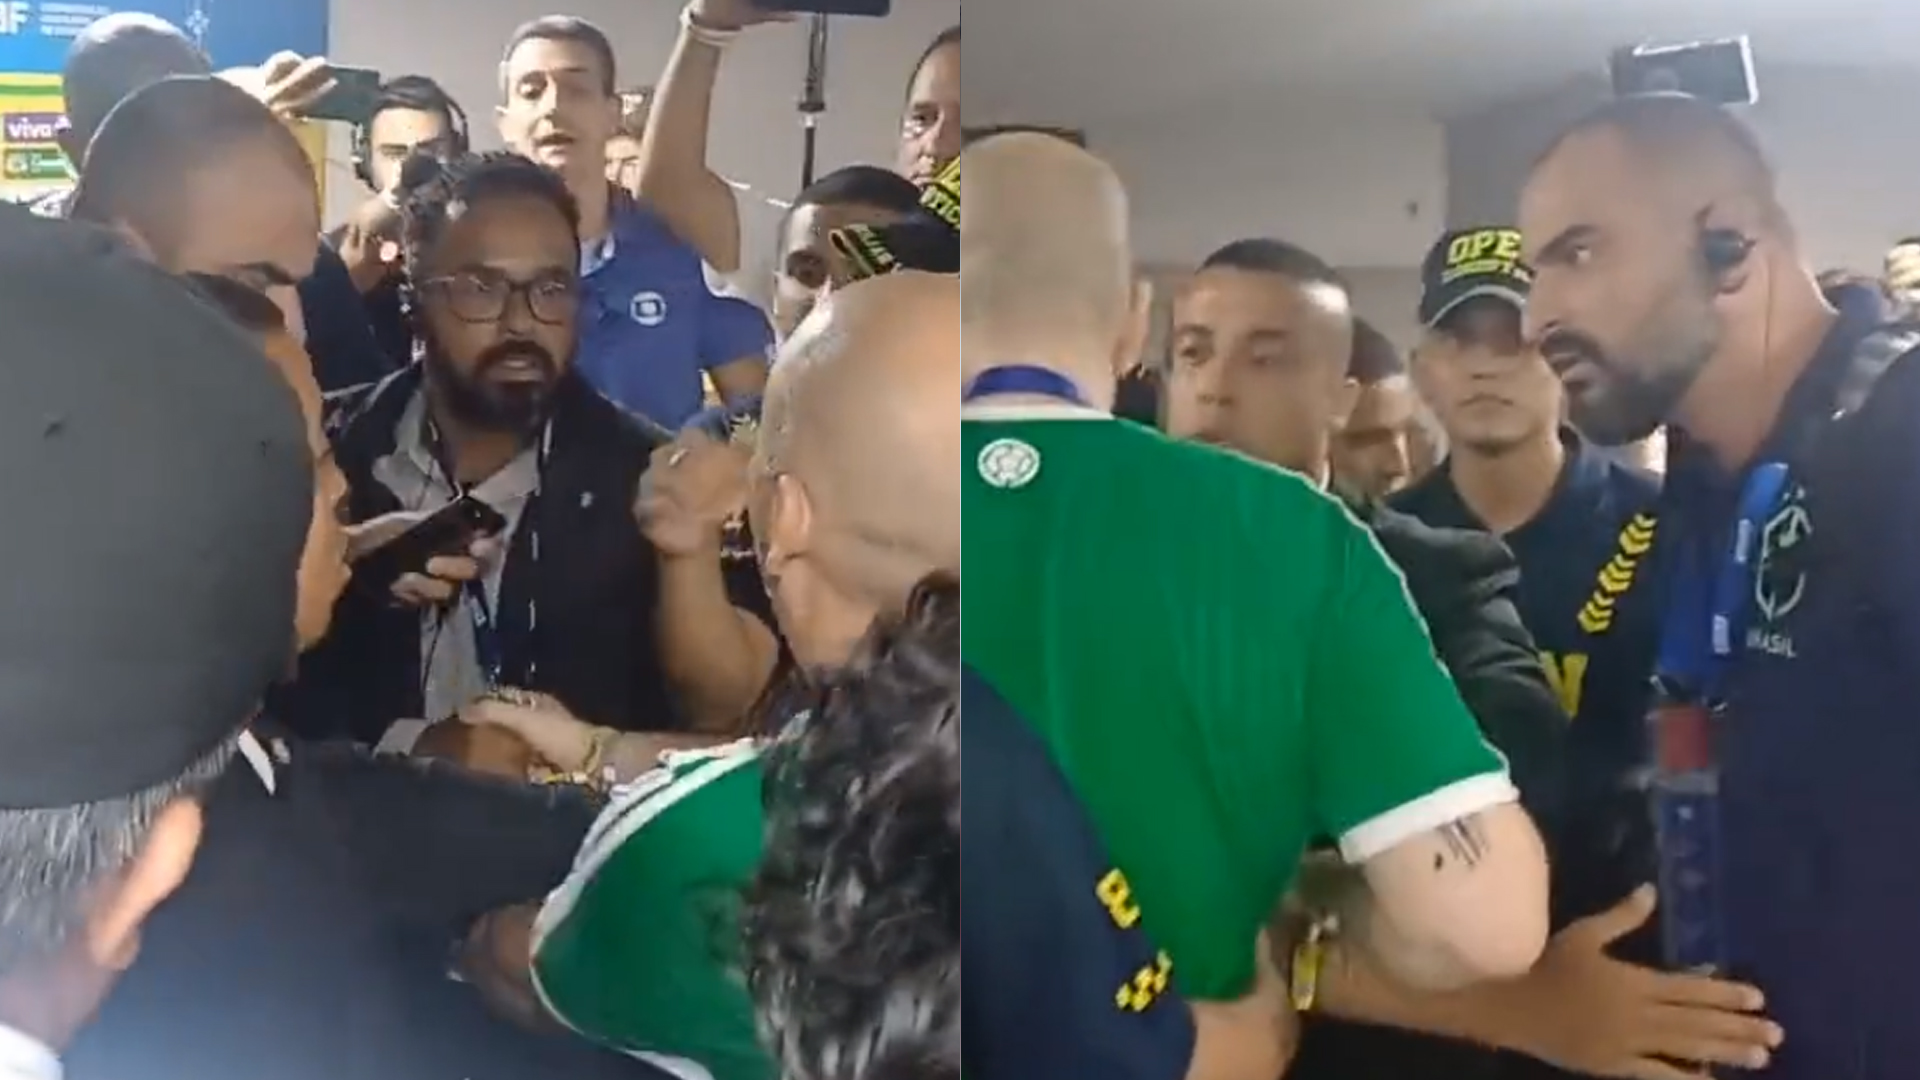 Momentos de la pelea capturados en un video aficionado